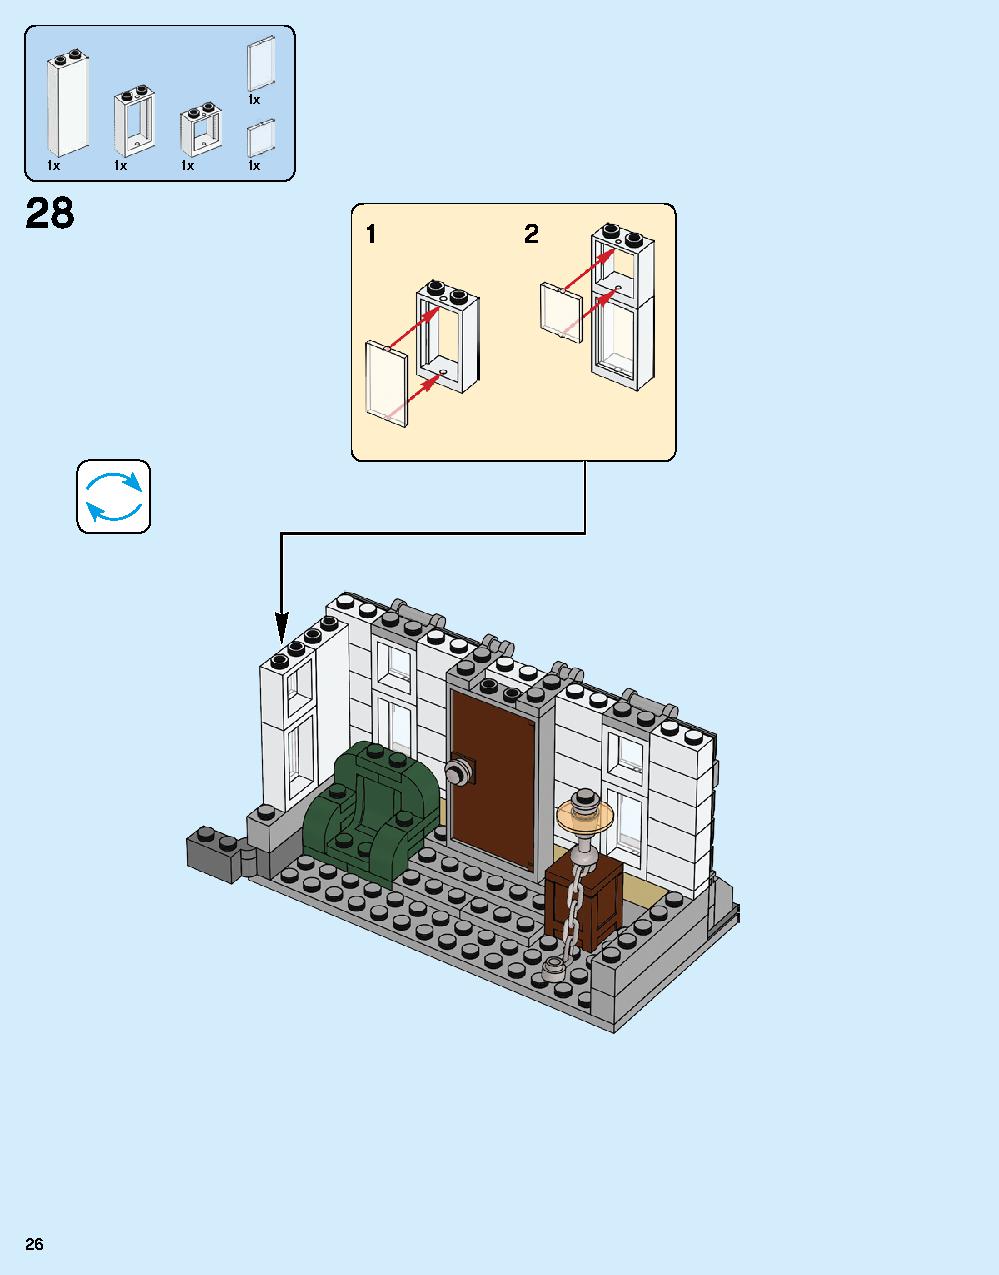 ドクター・ストレンジの神聖な館での戦い 76108 レゴの商品情報 レゴの説明書・組立方法 26 page